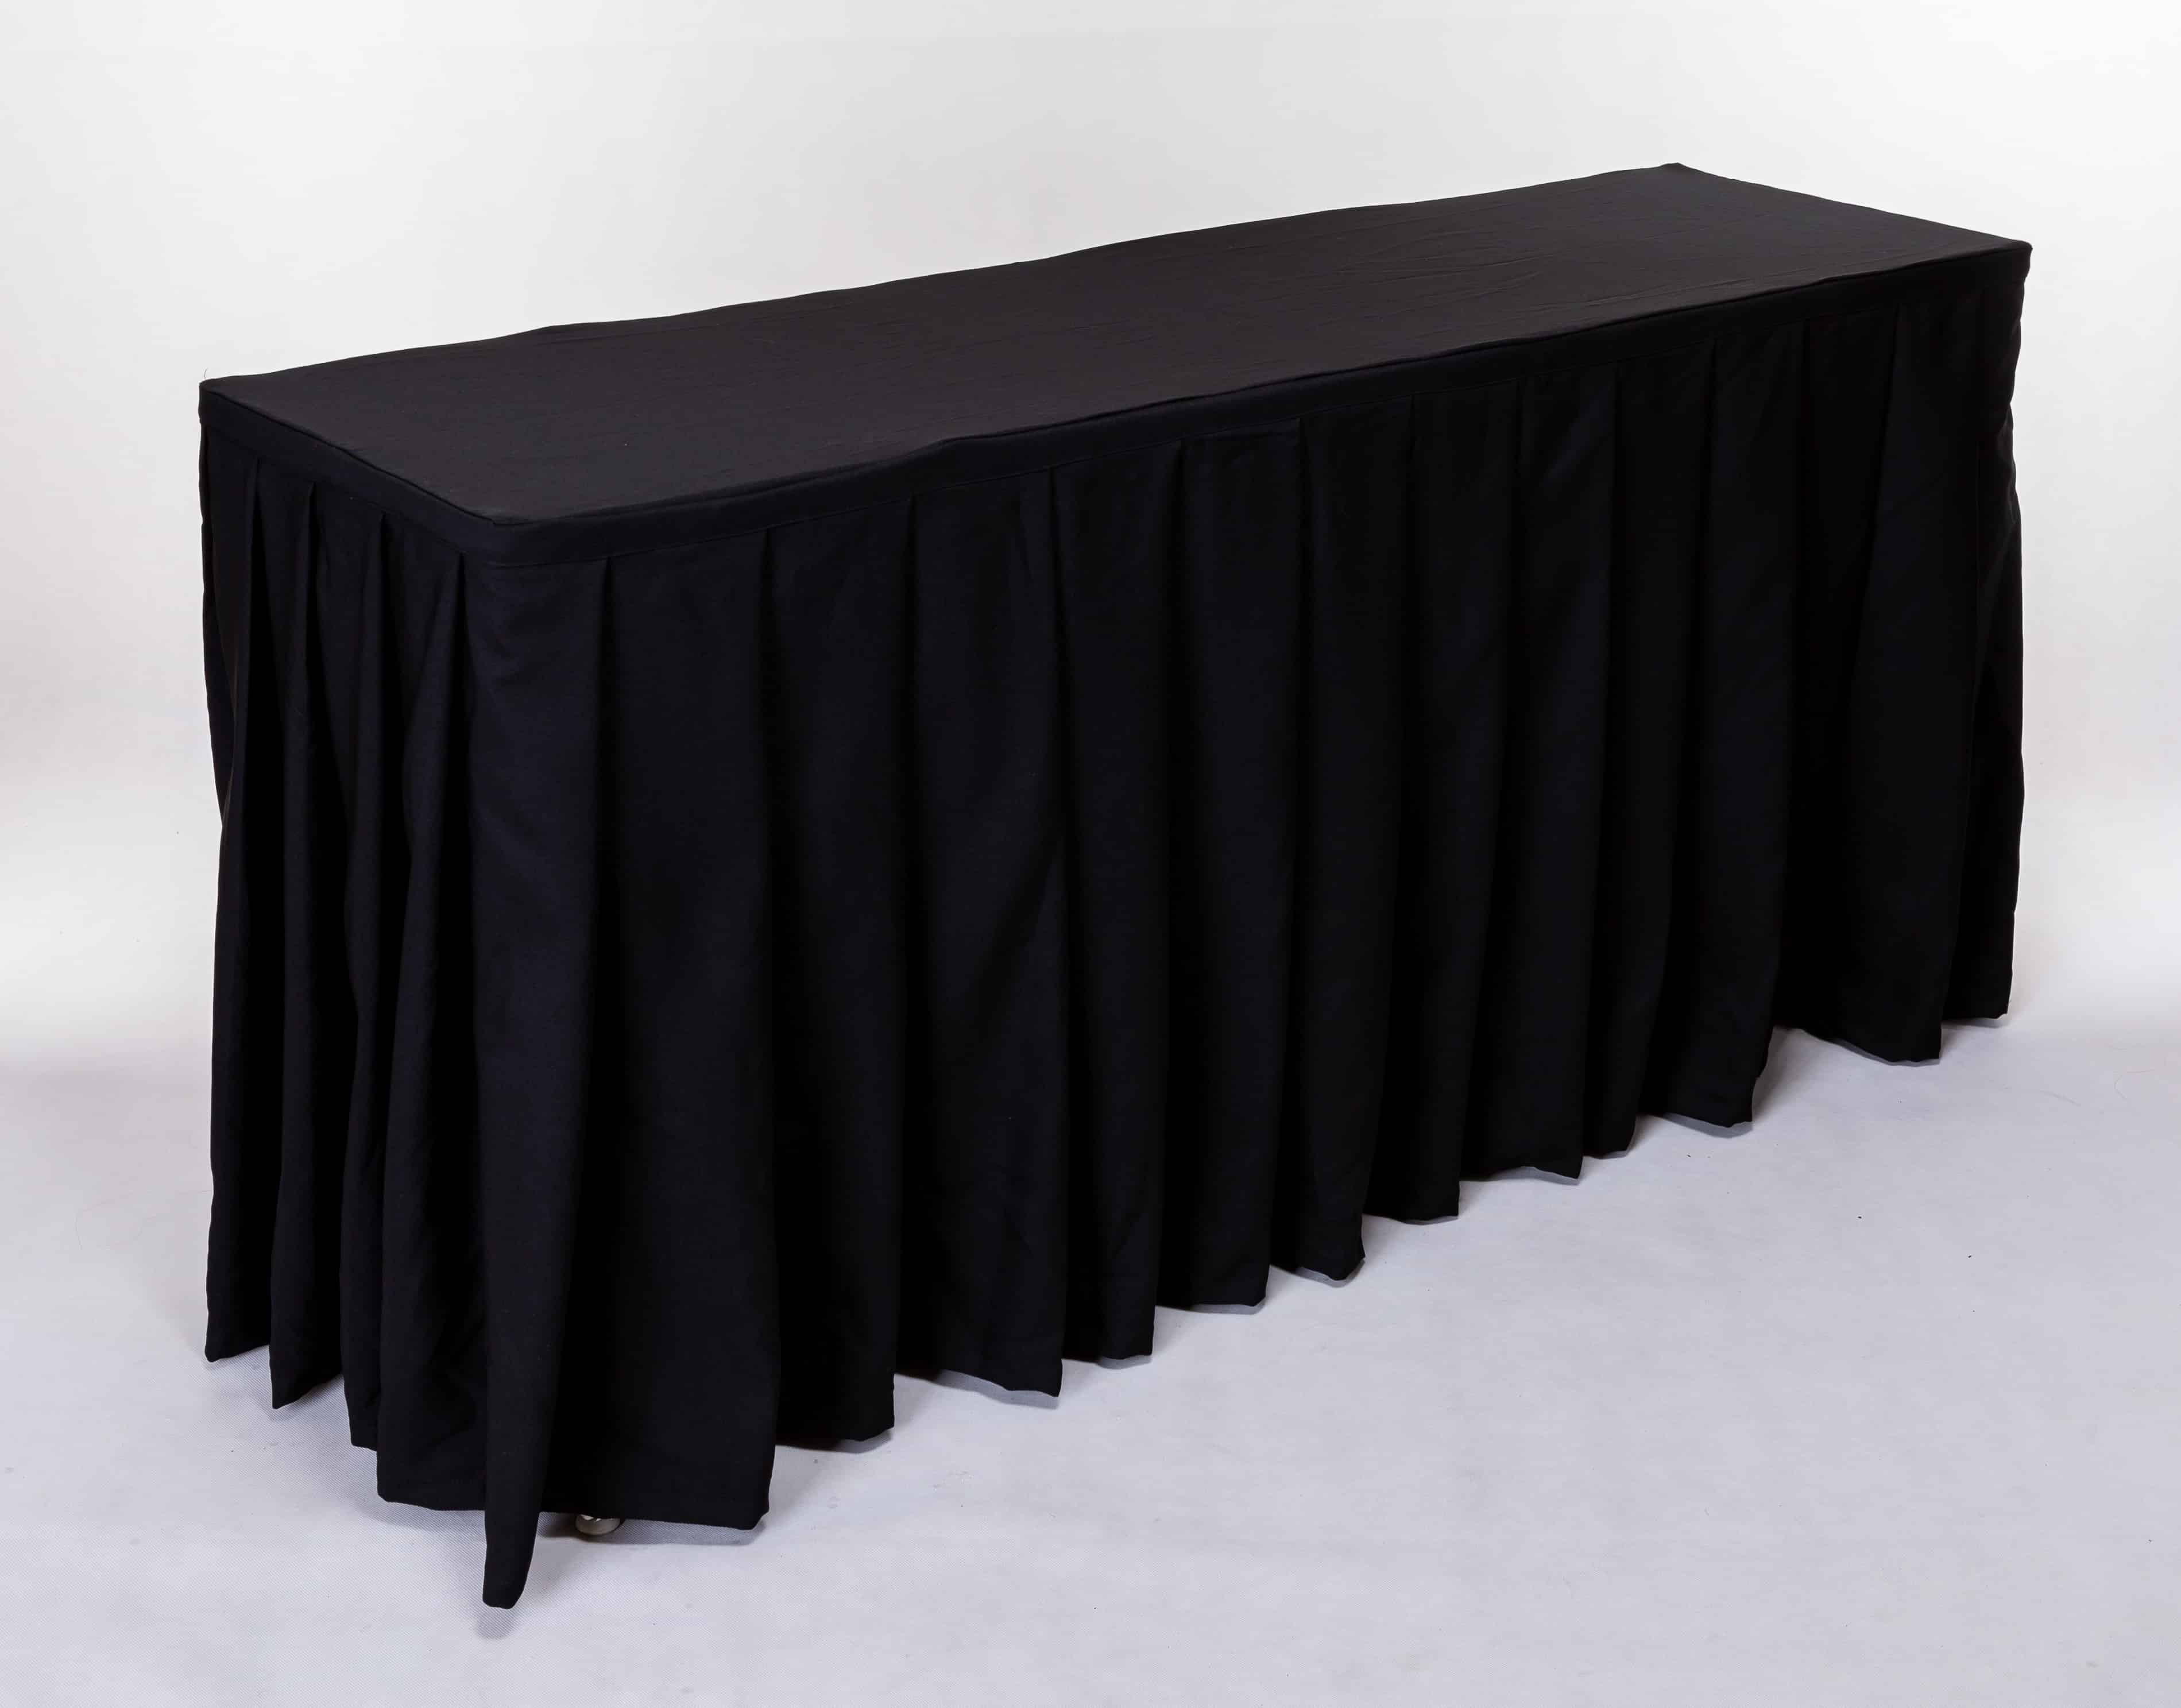 เช่าโต๊ะคลุมผ้าสีดำแบบจีบเรียง